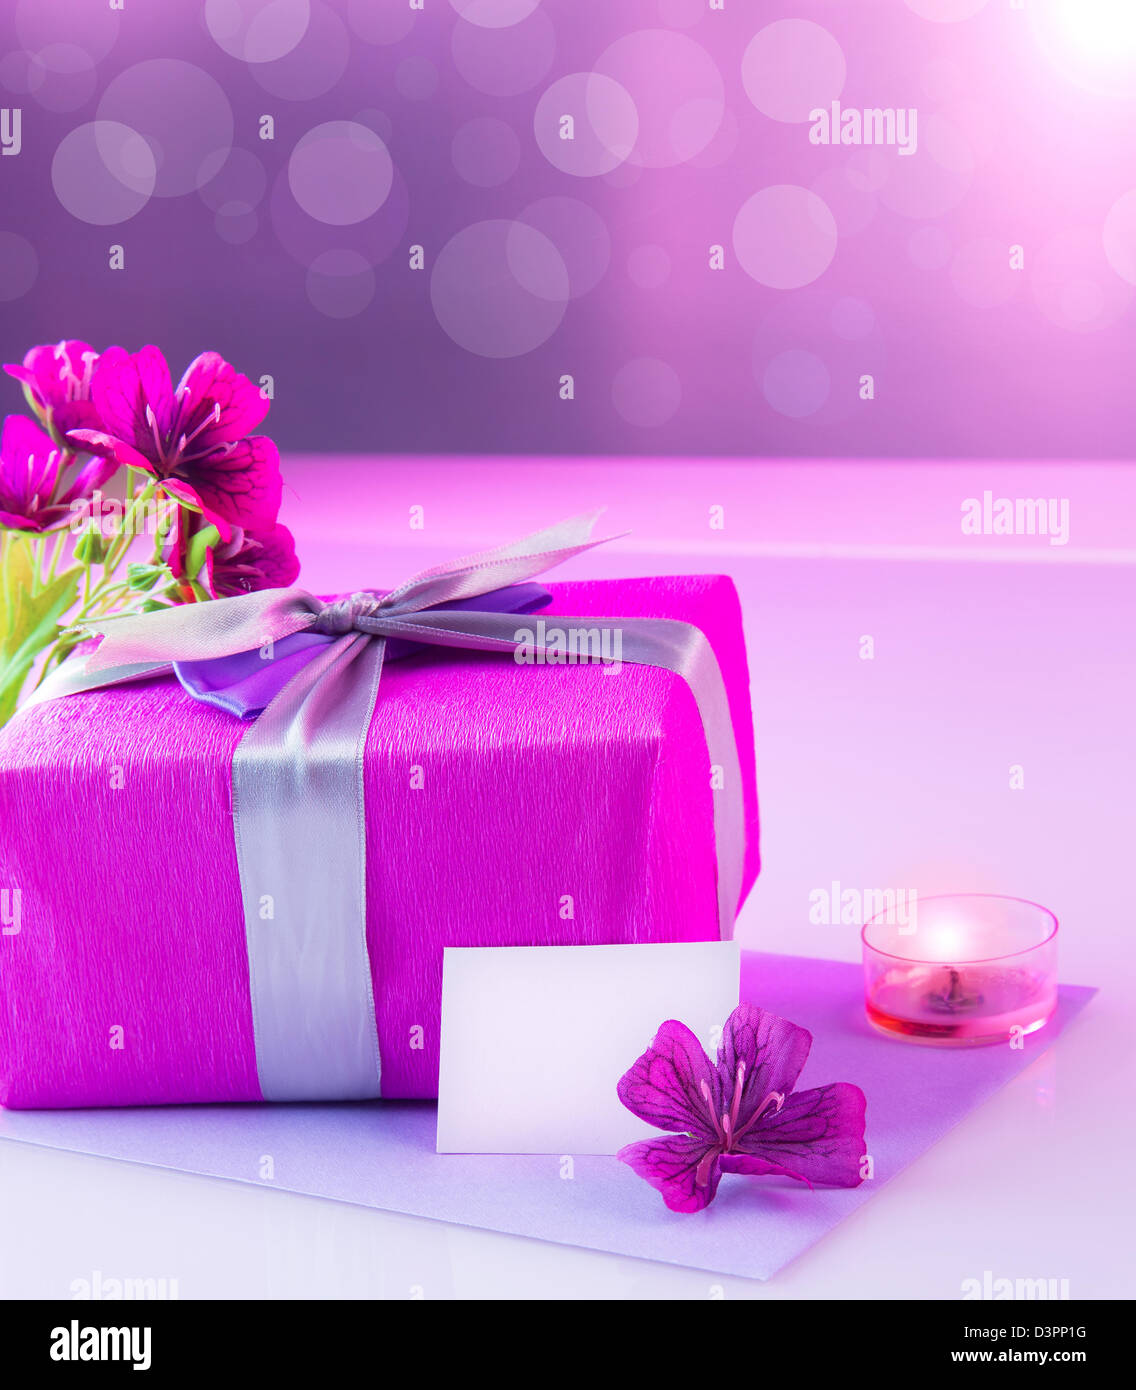 Bild des großen rosa Kasten mit weißen leeren Grußkarte auf dem Tisch zu präsentieren und dekoriert mit frischen Blumen Blumenstrauß und Kerze Stockfoto